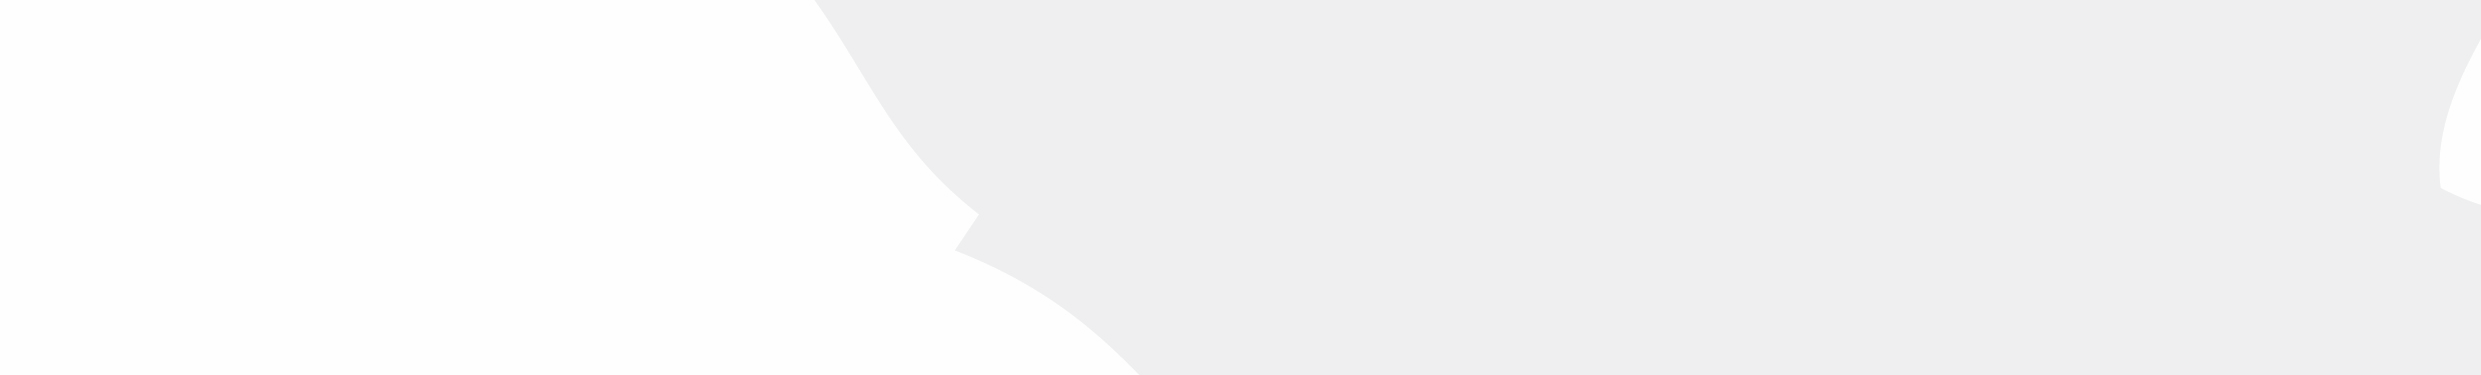 - SPEISEKARTE - Vorspeise Legiertes Maronenschaumsüpple mit Streifen vom hausgeräucherten Wildschinken und Sahnehäubchen 4,90 Hausgeräucherter Wildschweinschinken an Feldsalat mit Splitter von